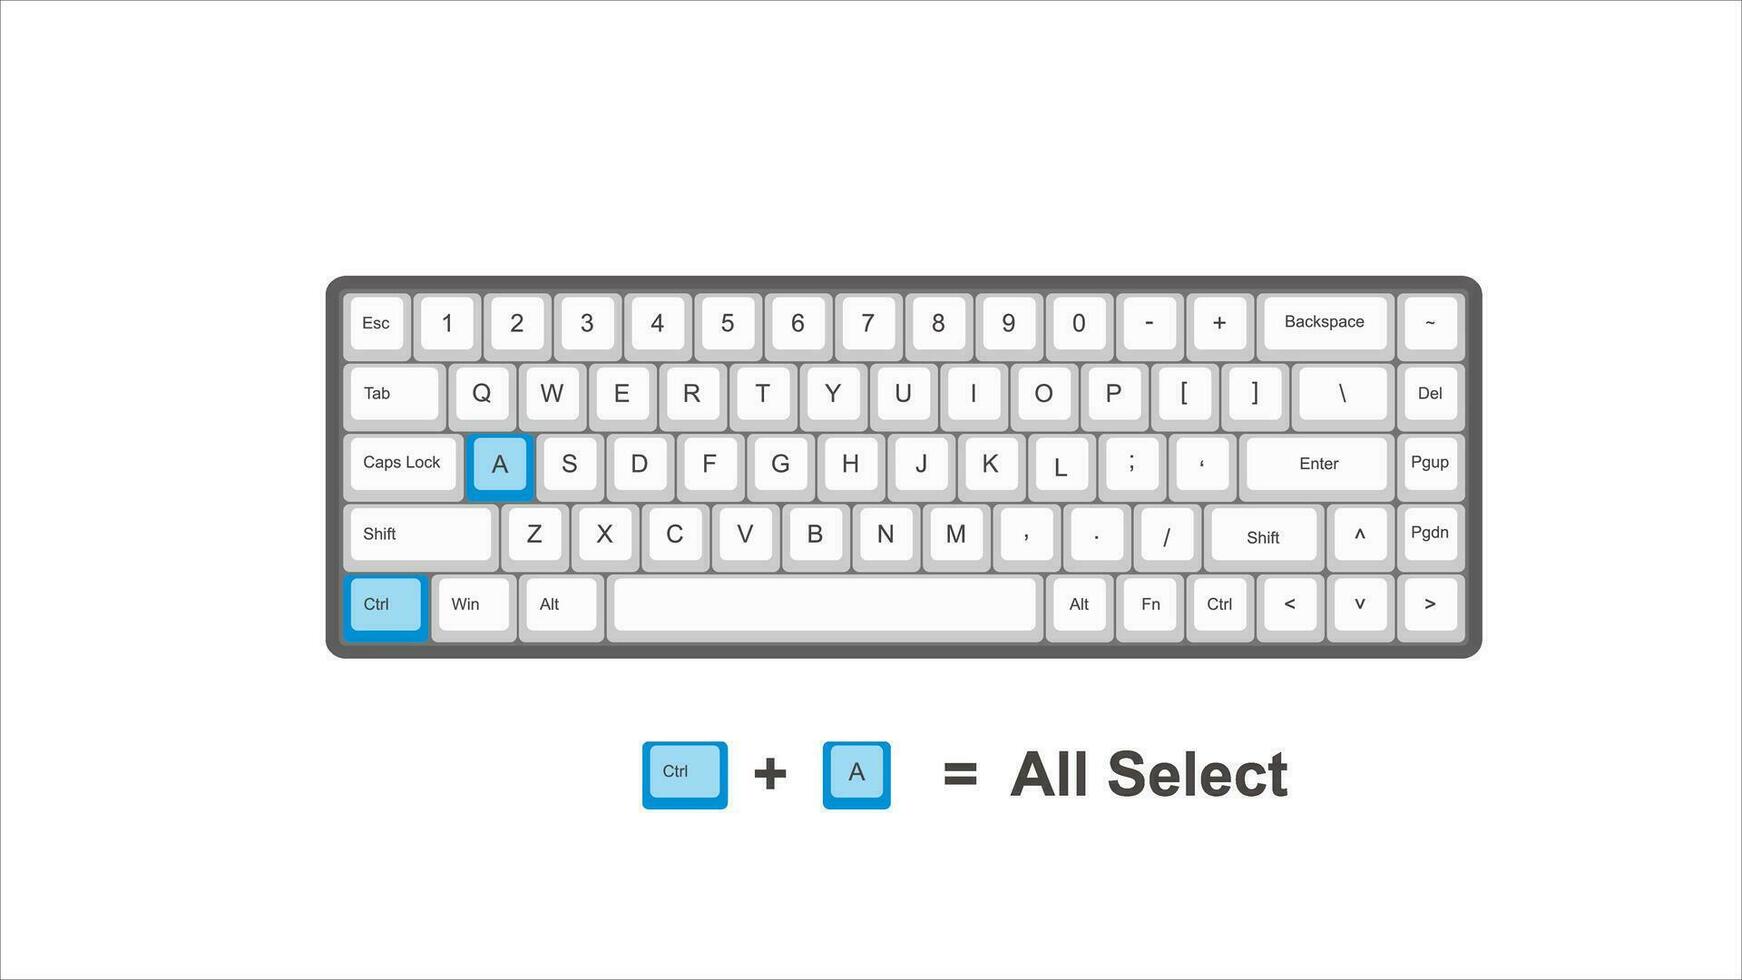 vetor ao controle ctrl uma todos selecionar - teclado atalhos - janelas com teclado branco e azul ilustração e transparente fundo isolado